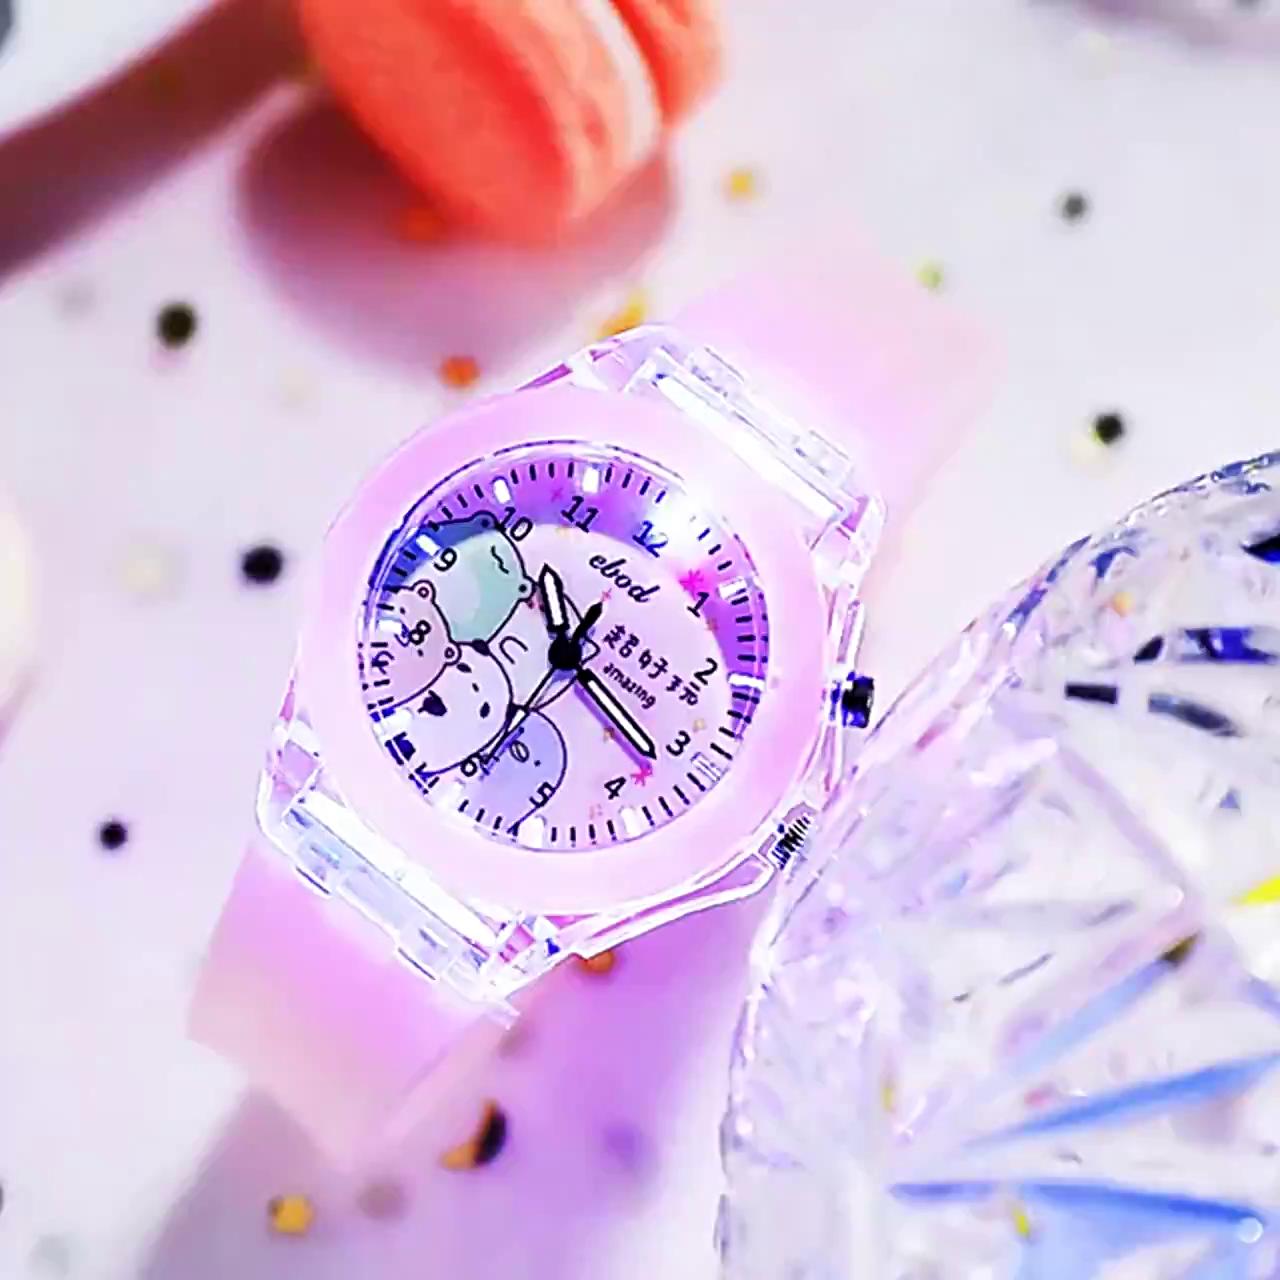 frozen-นาฬิกาข้อมือ-มีไฟ-led-หลากสีสัน-เหมาะกับเล่นกีฬากลางแจ้ง-สําหรับเด็กผู้ชาย-และเด็กผู้หญิง